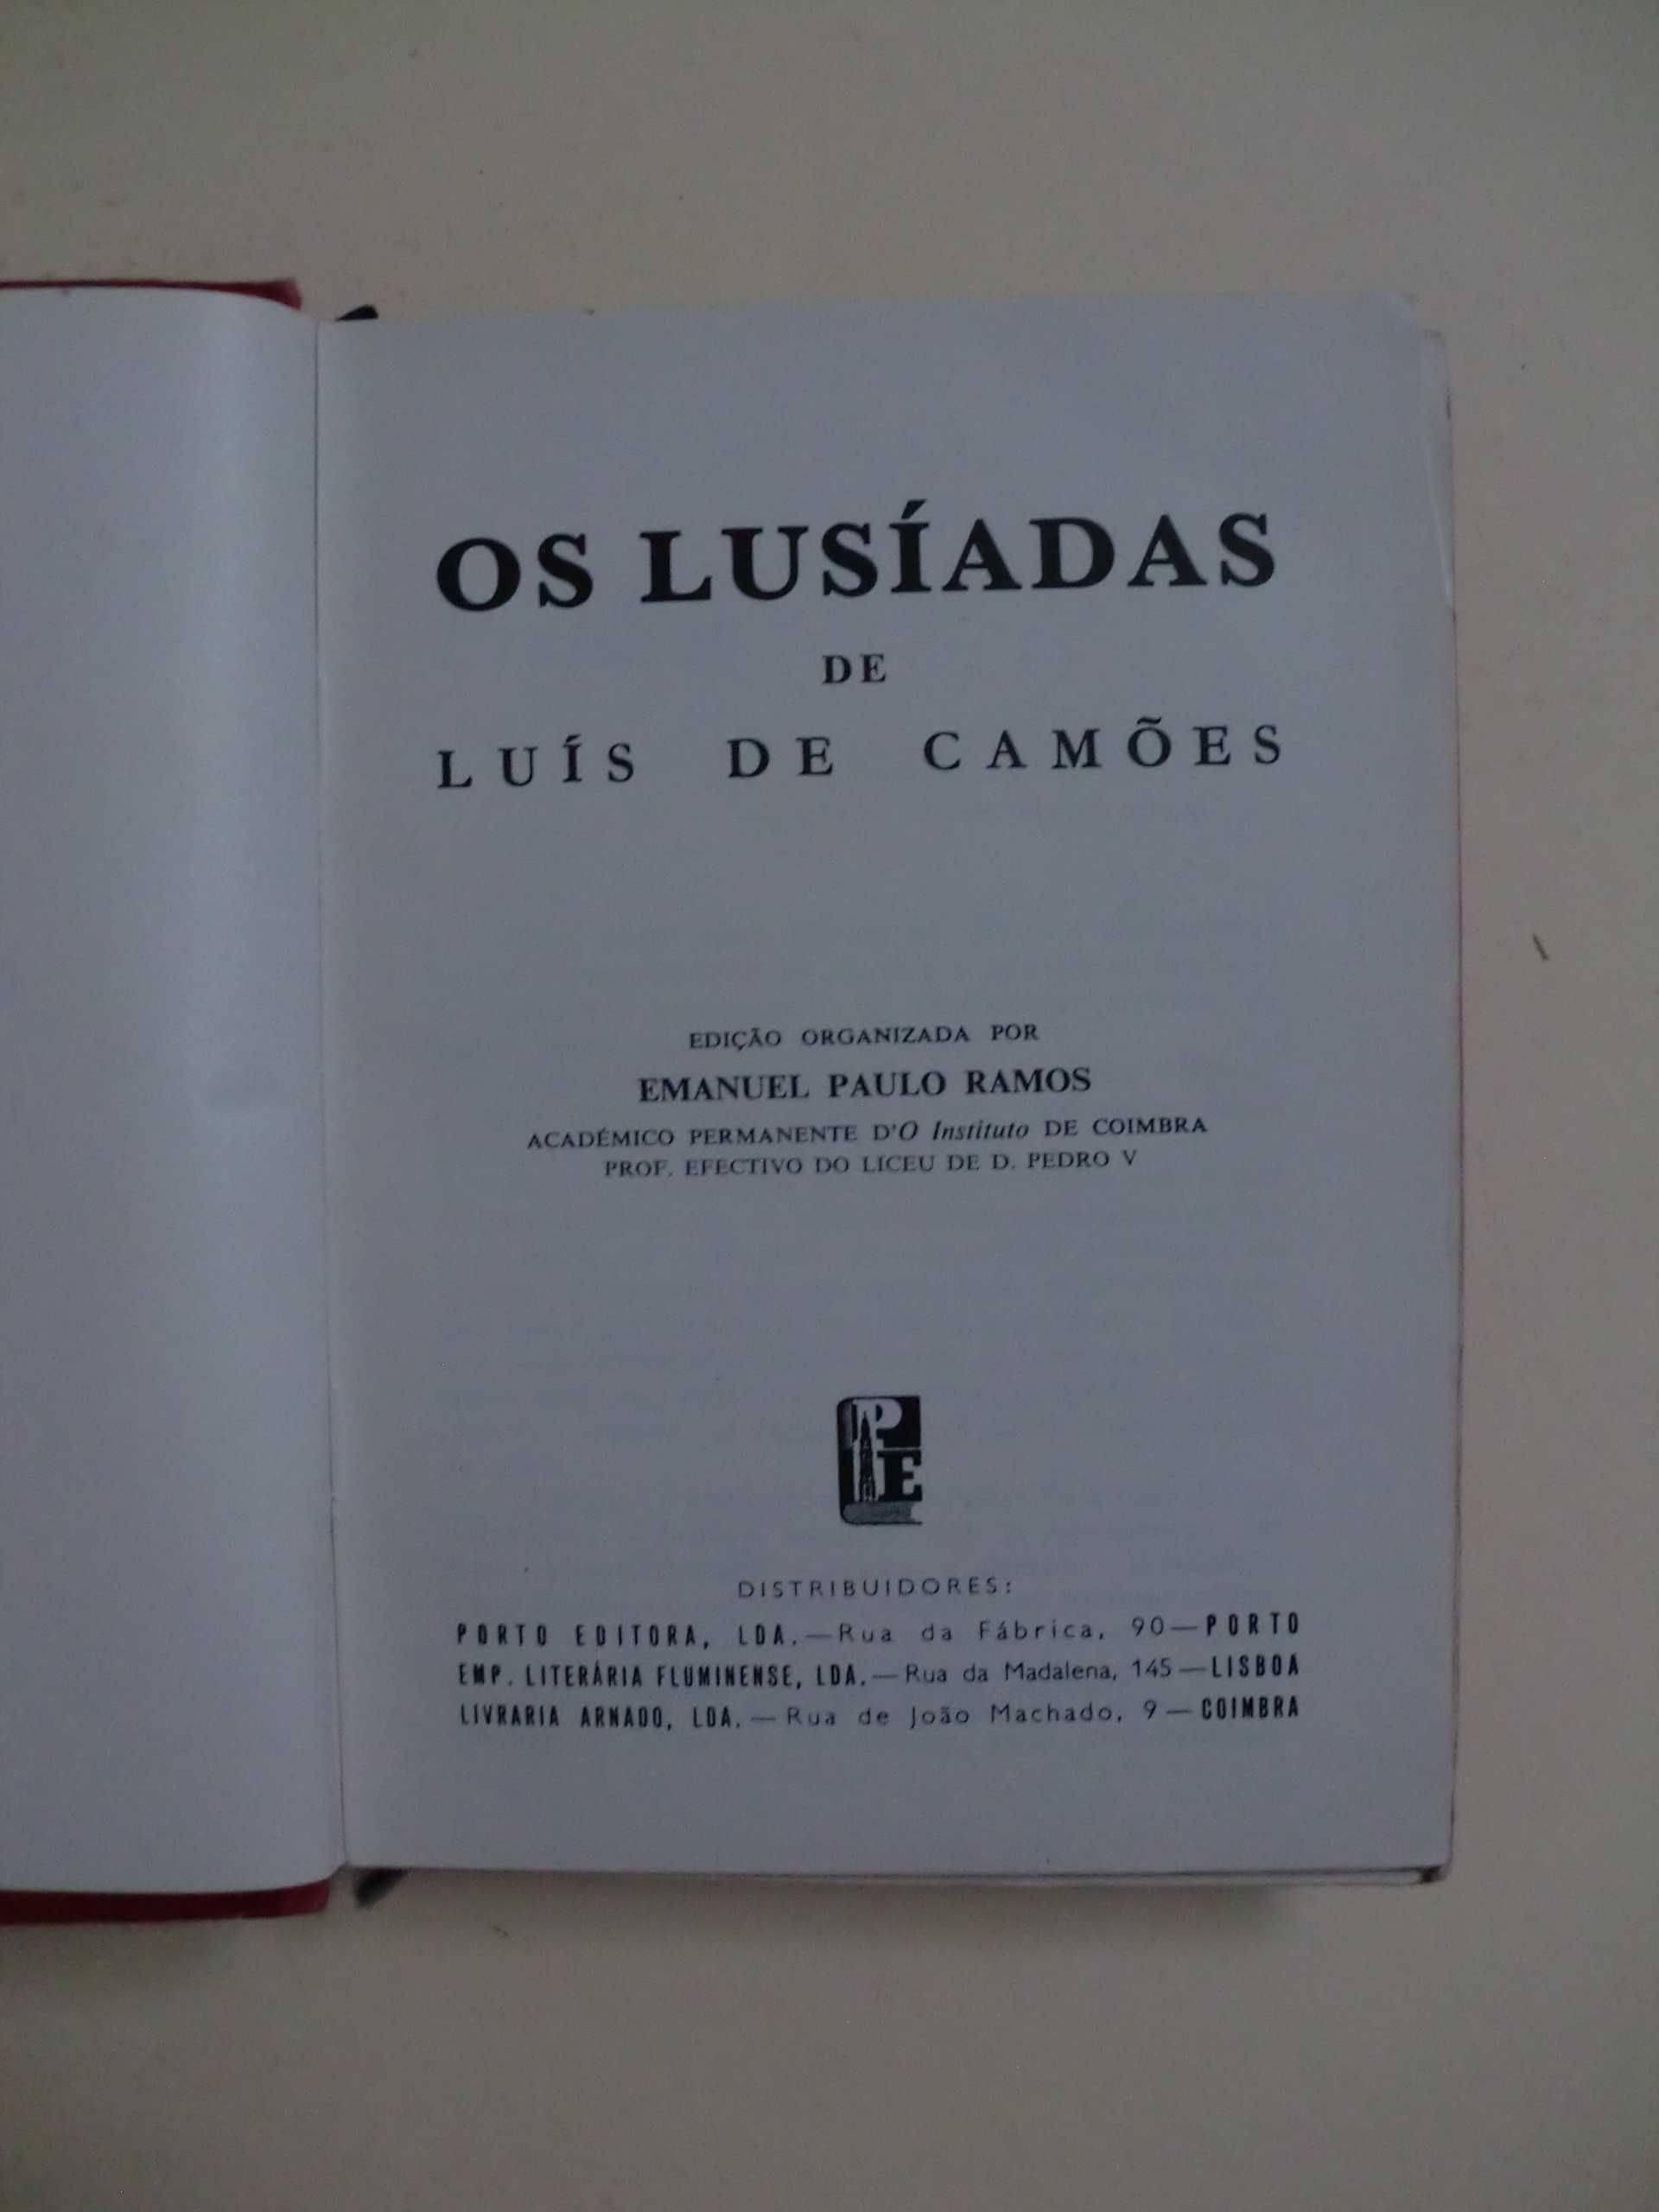 Os Lusíadas
de Luís Camões